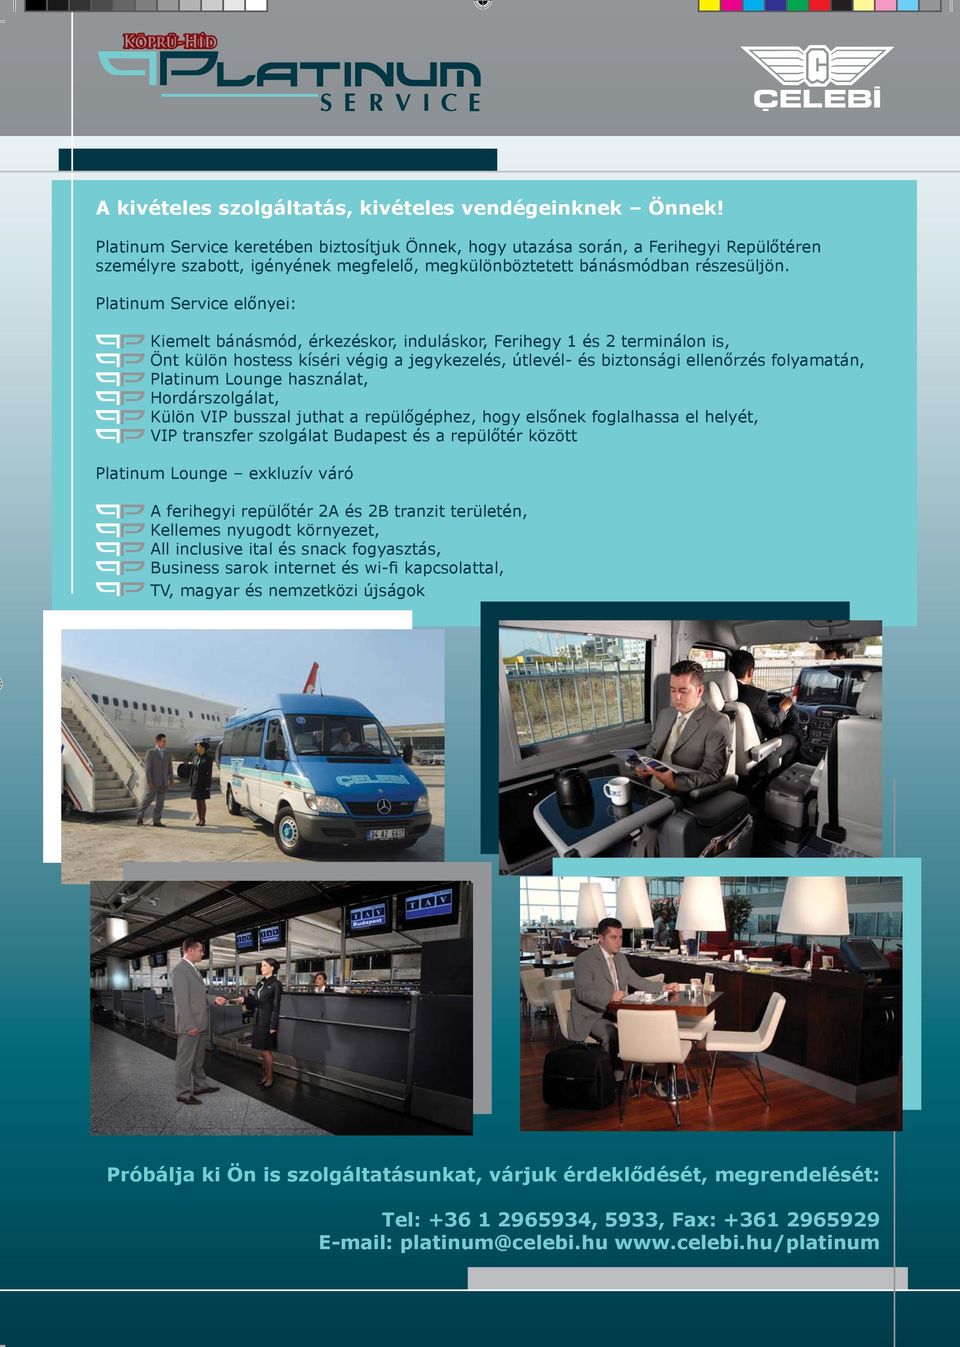 Platinum Service előnyei: Kiemelt bánásmód, érkezéskor, induláskor, Ferihegy 1 és 2 terminálon is, Önt külön hostess kíséri végig a jegykezelés, útlevél- és biztonsági ellenőrzés folyamatán, Platinum